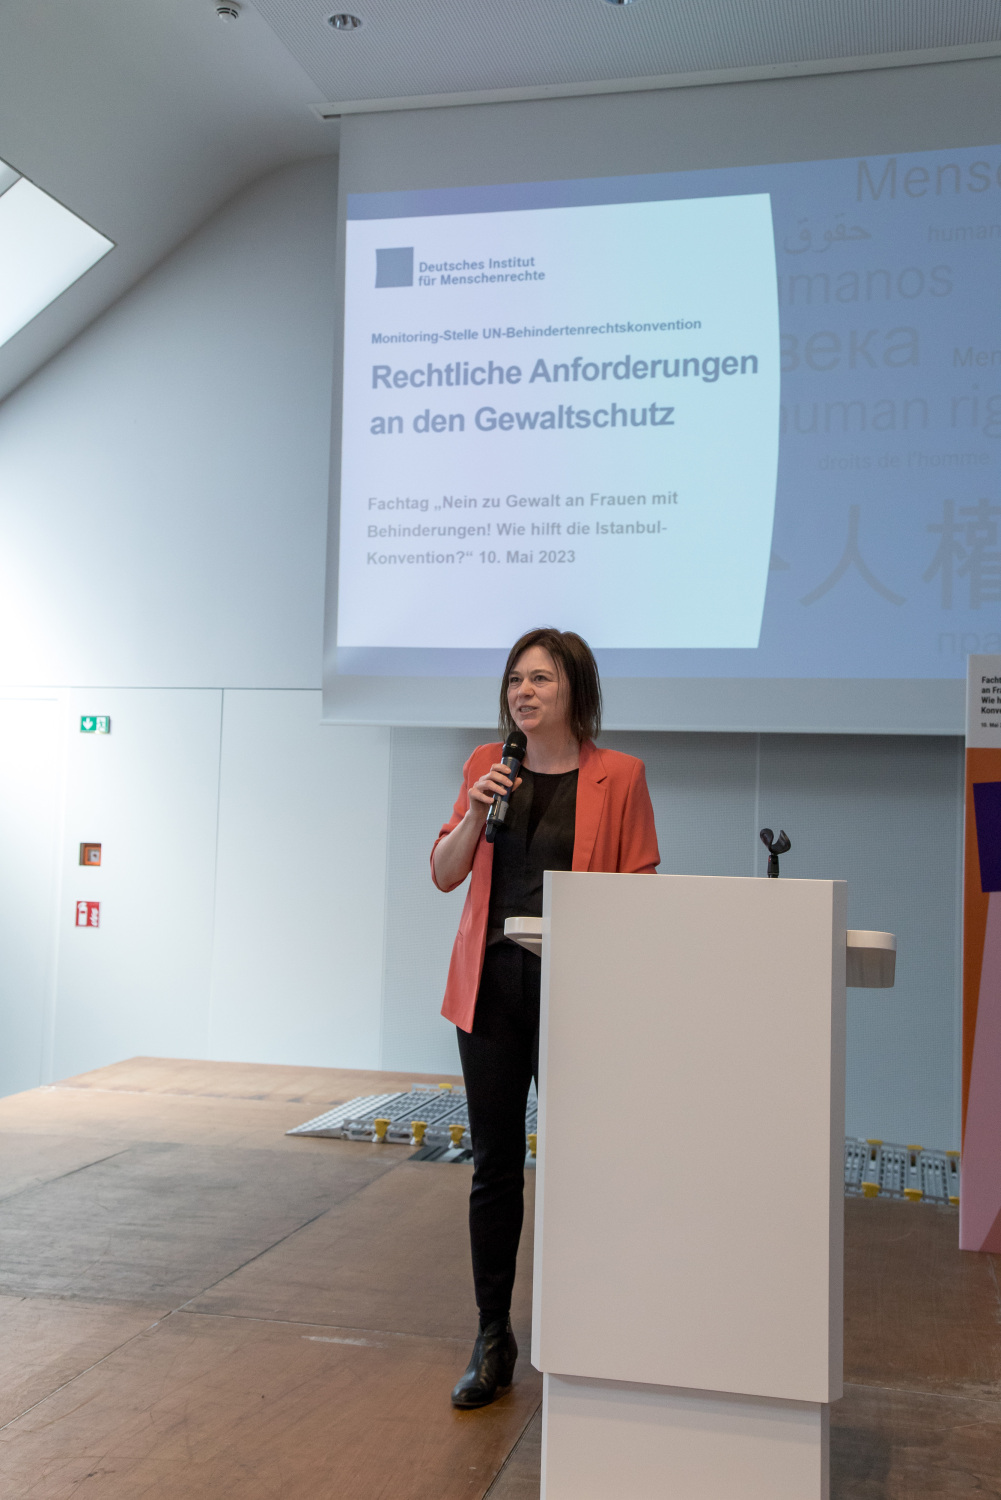 Dr. Britta Schlegel vom Deutschen Institut steht auf der Bühne und hält einen Vortrag. Auf der Leinwand hinter der Bühne steht der Titel des Vortrags "Rechtliche Anforderungen an den Gewaltschutz"